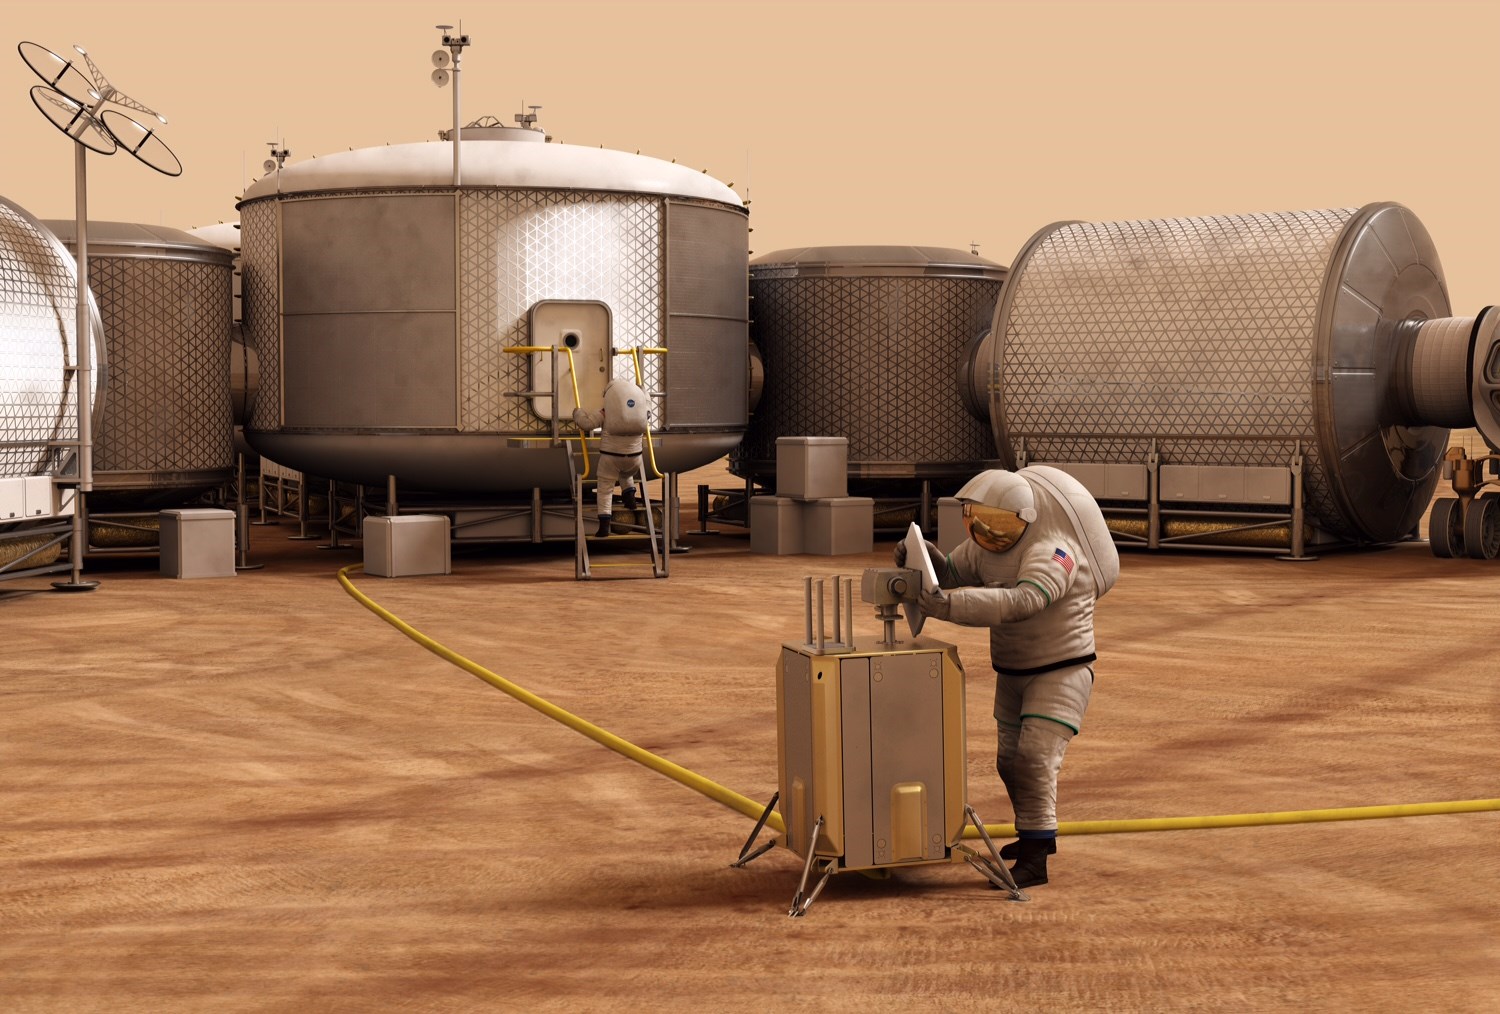 Mars sorununun çözümü 3D yazıcılar olabilir